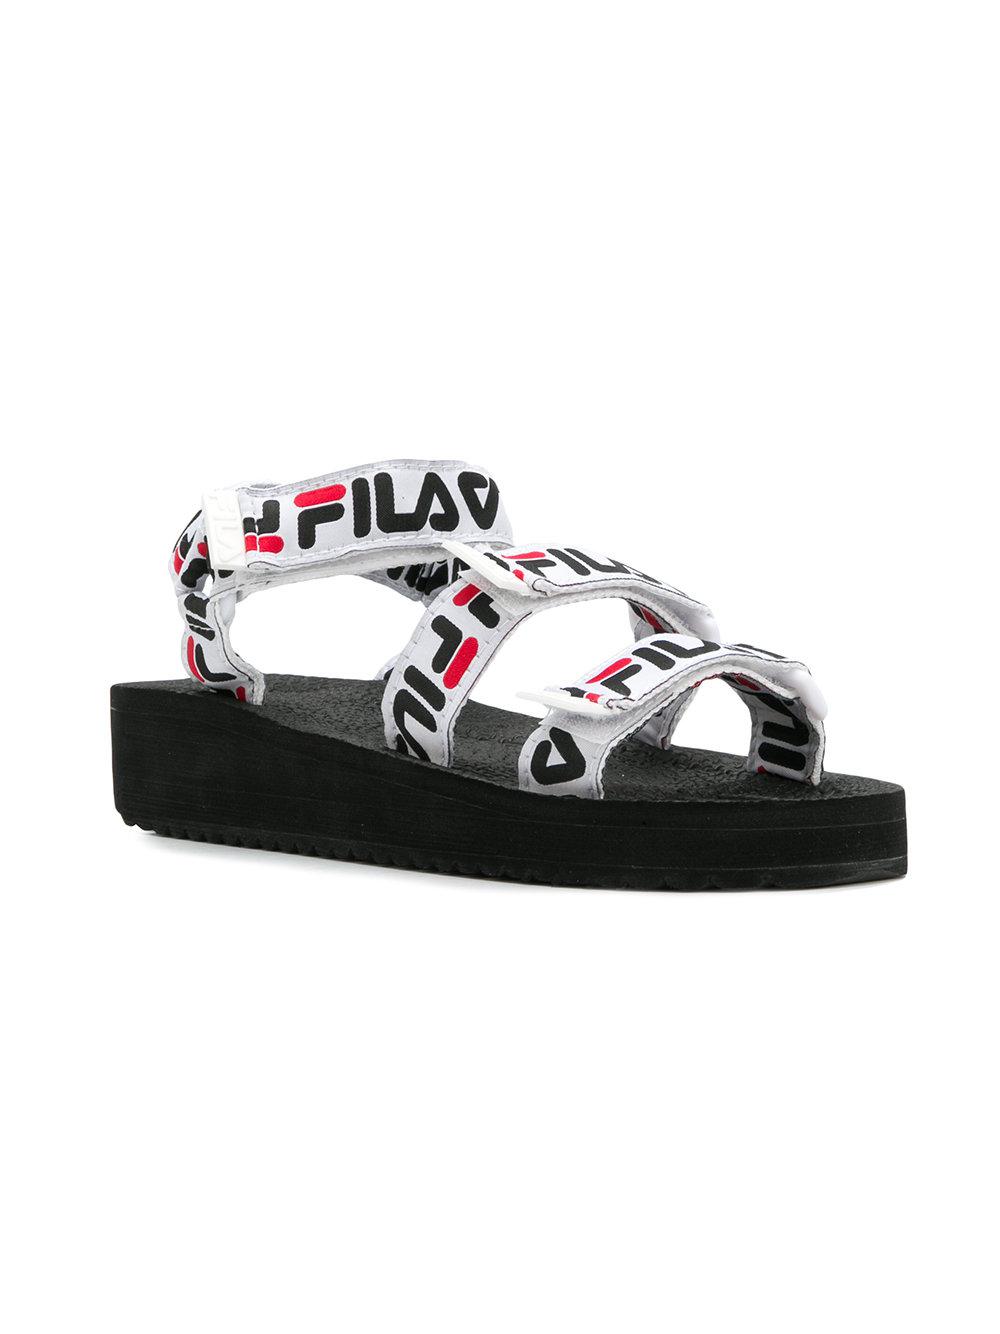 fila shoes strap